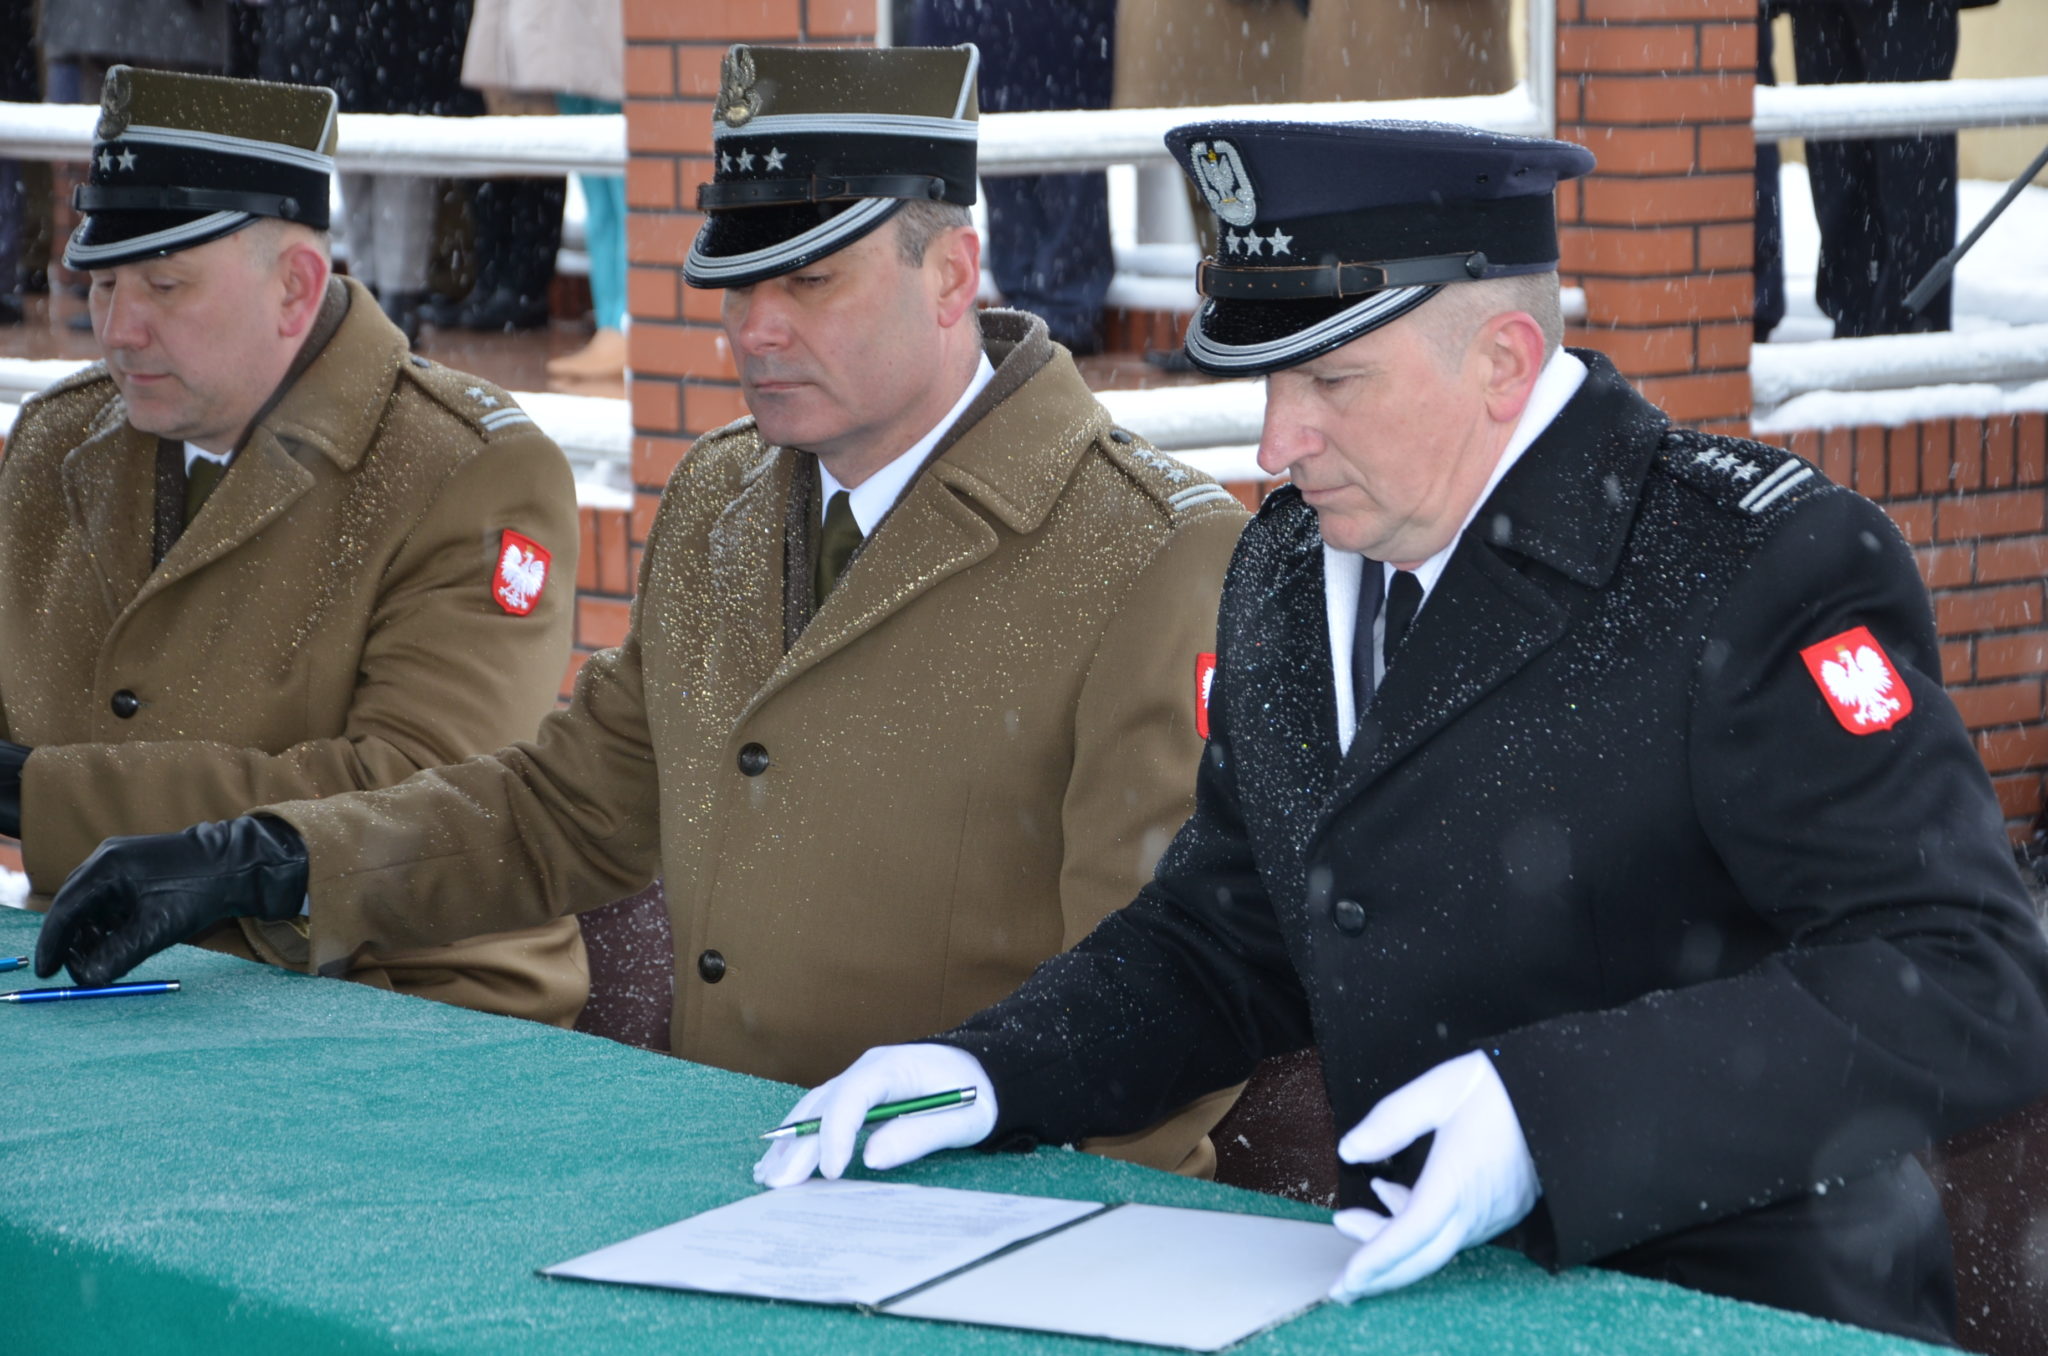 trzech męzczyzn w mundurach galowych podczas podpisania aktu mianowania